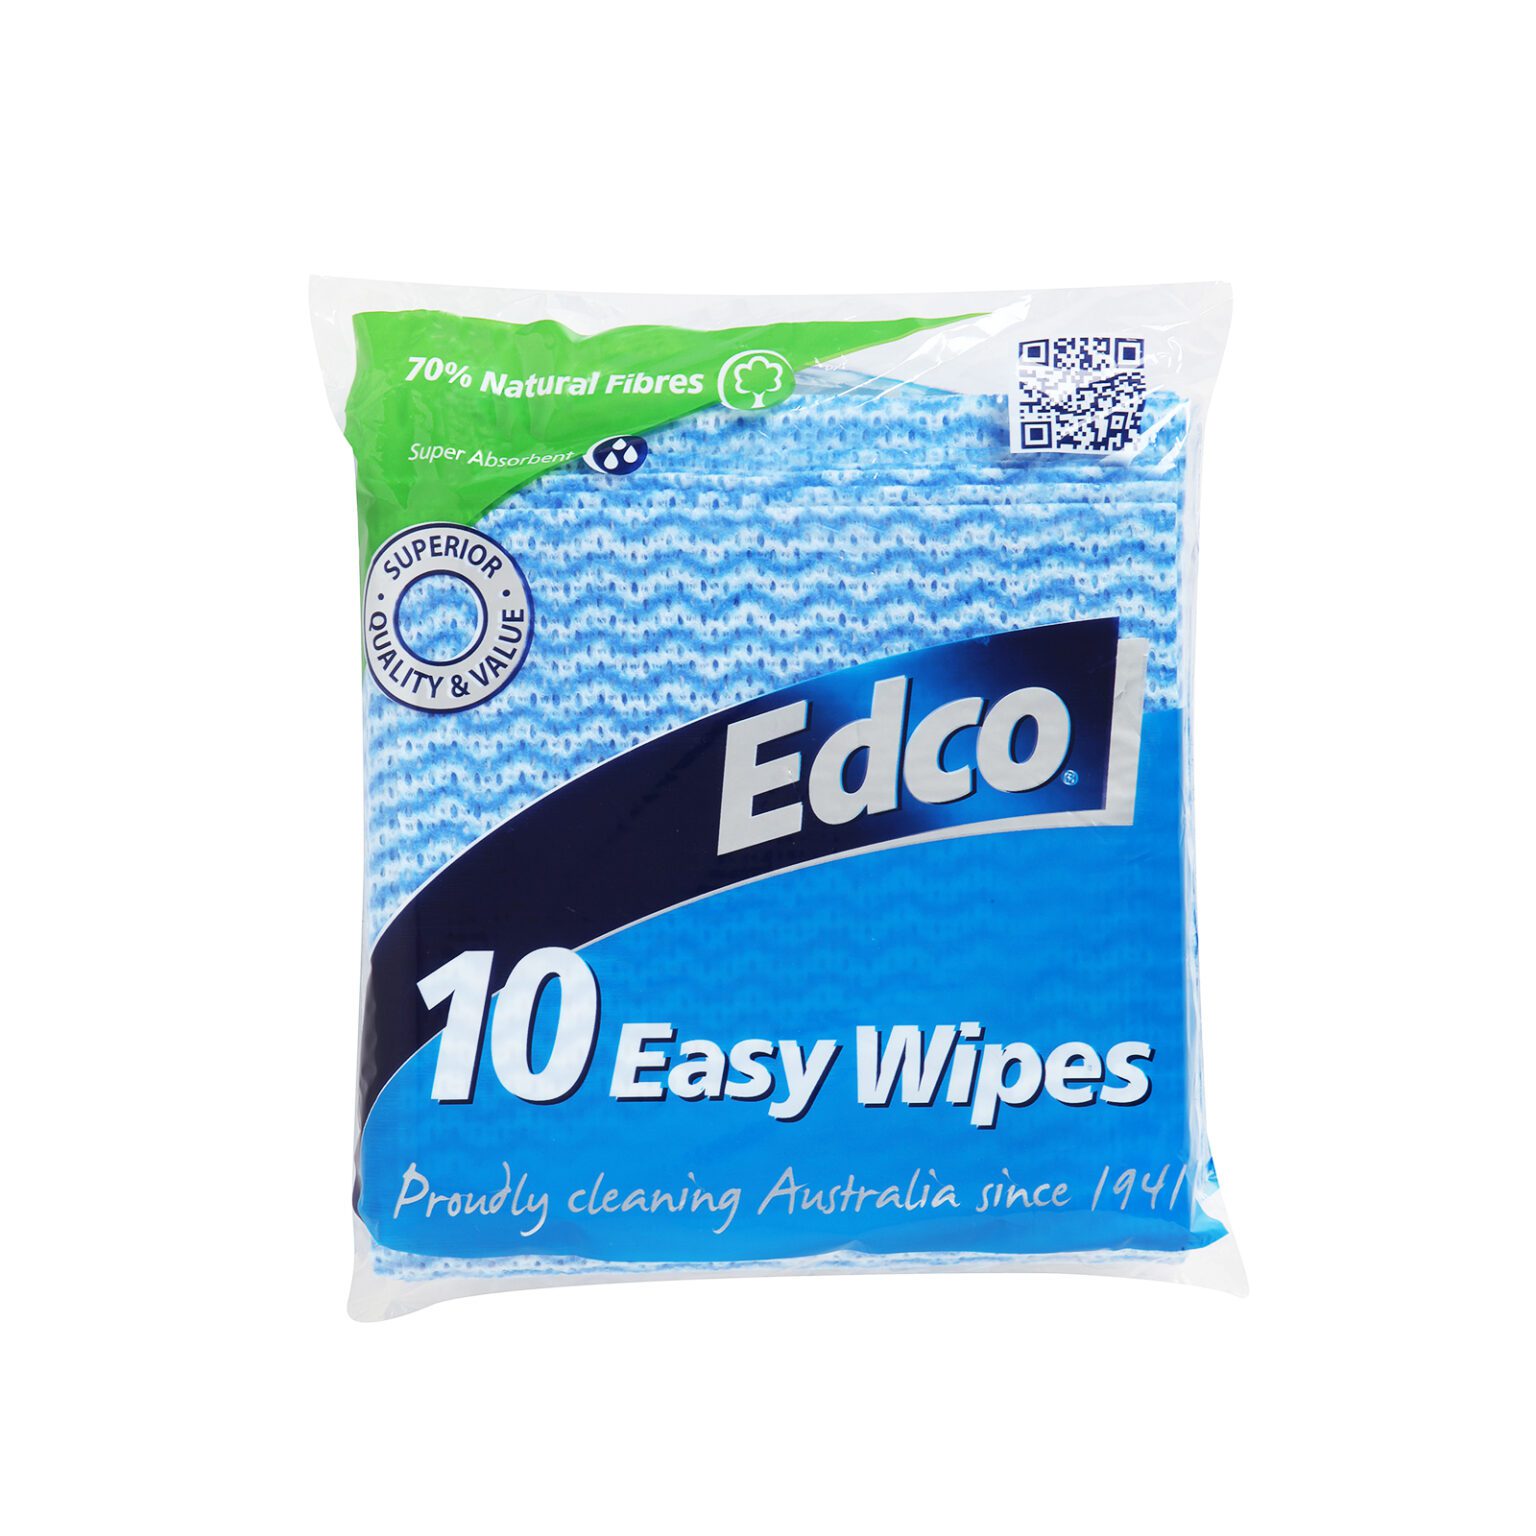 56111-Edco-10-Easy-Wipes-IP-HR